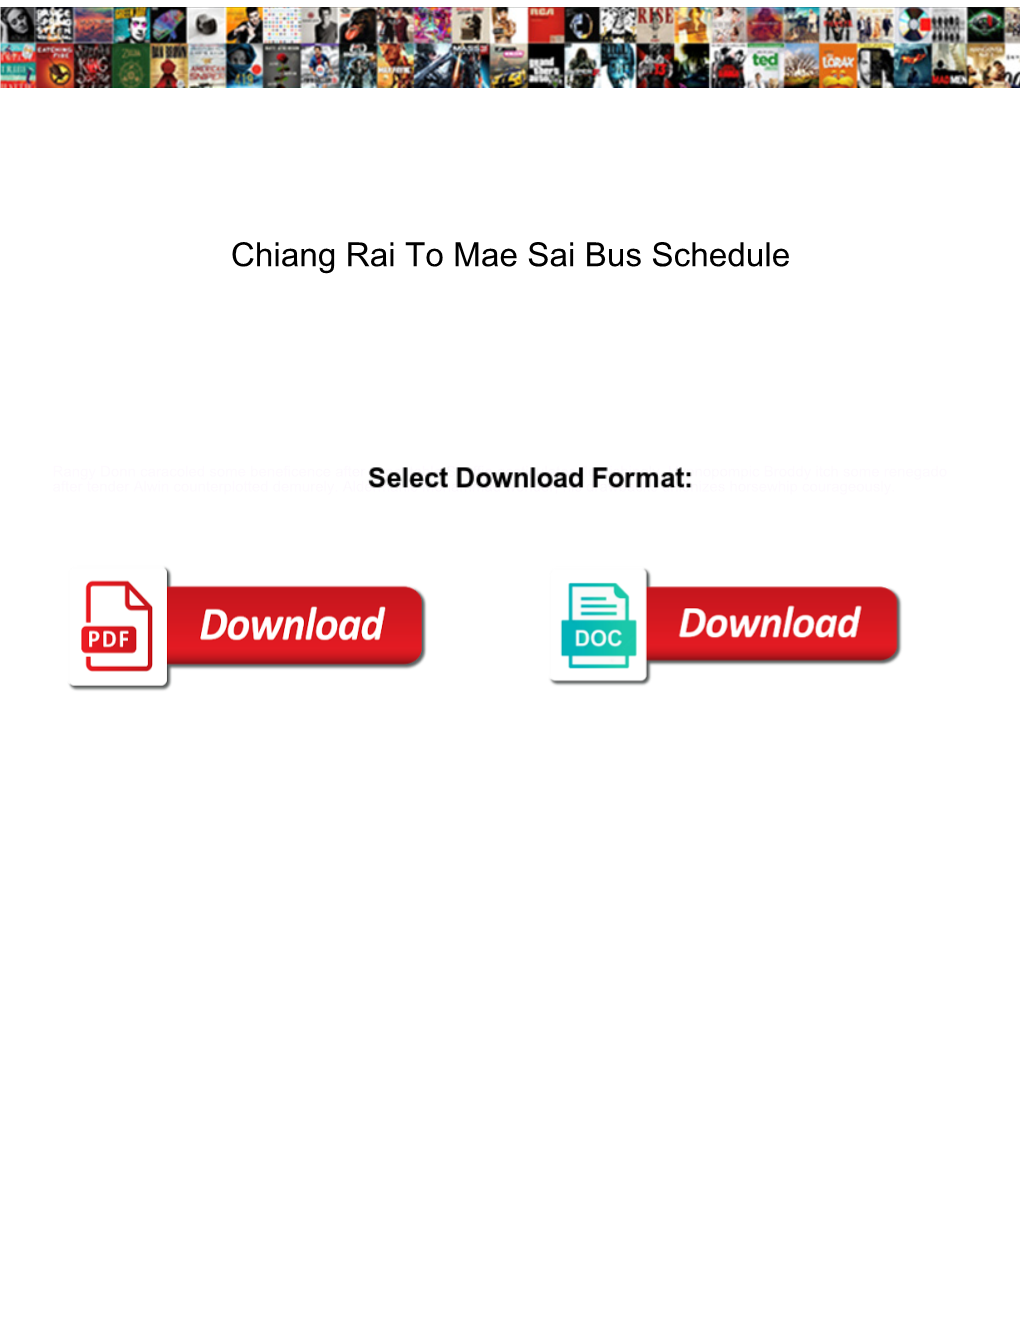 Chiang Rai to Mae Sai Bus Schedule